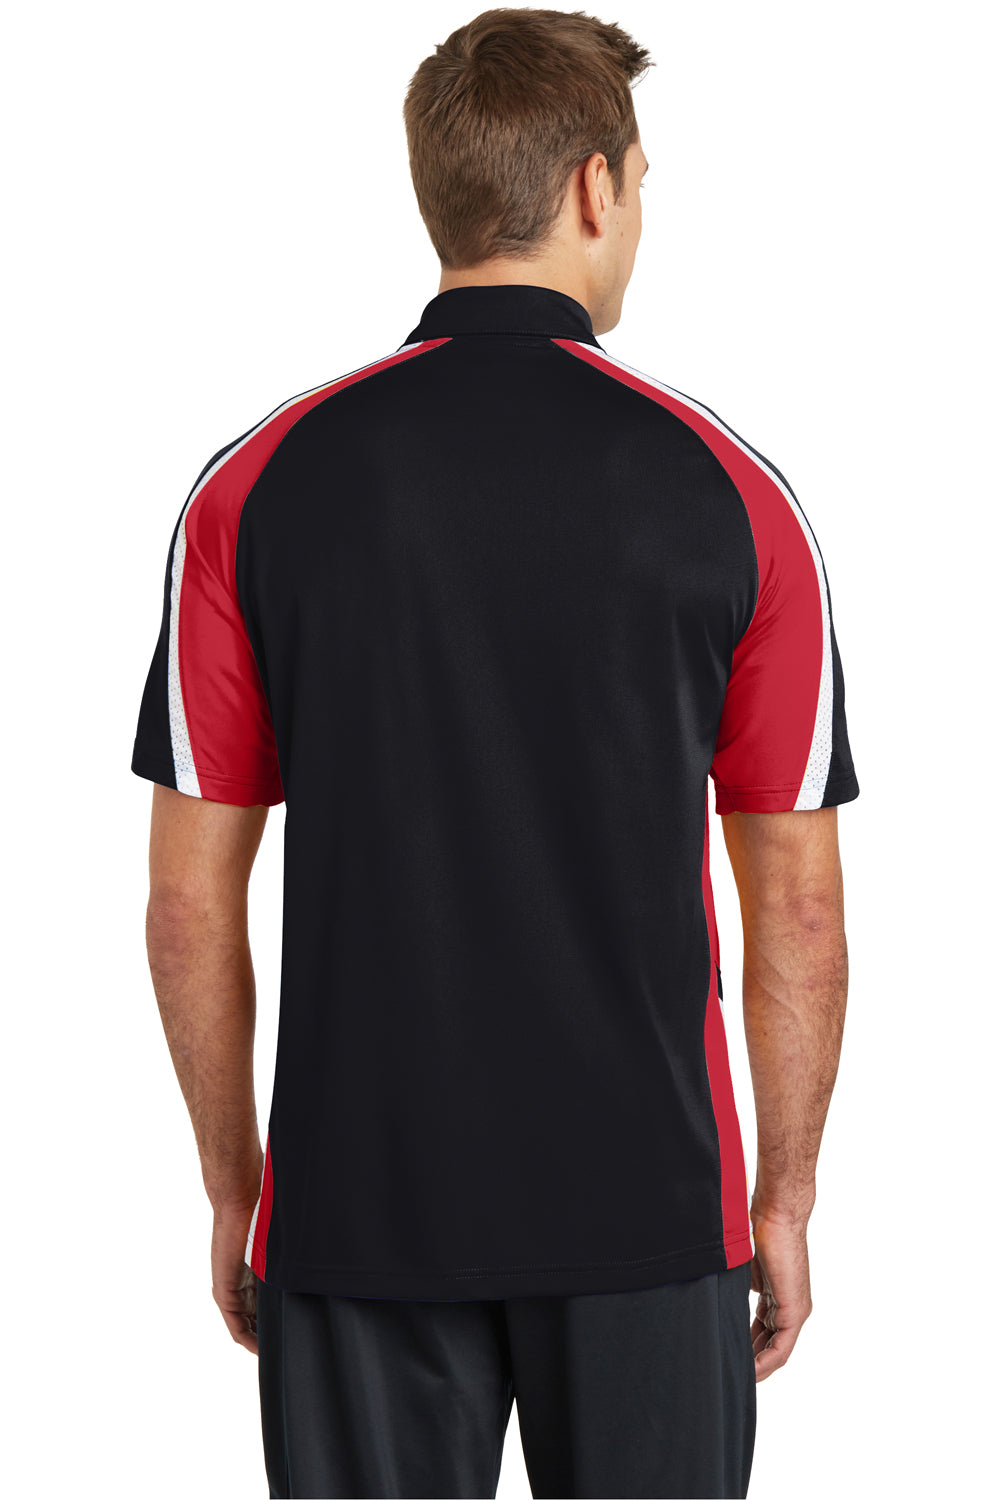 Sport-Tek ST654 Mens Sport-Wick Moisture Wicking Short Sleeve Polo Shirt Black/Red/White Back